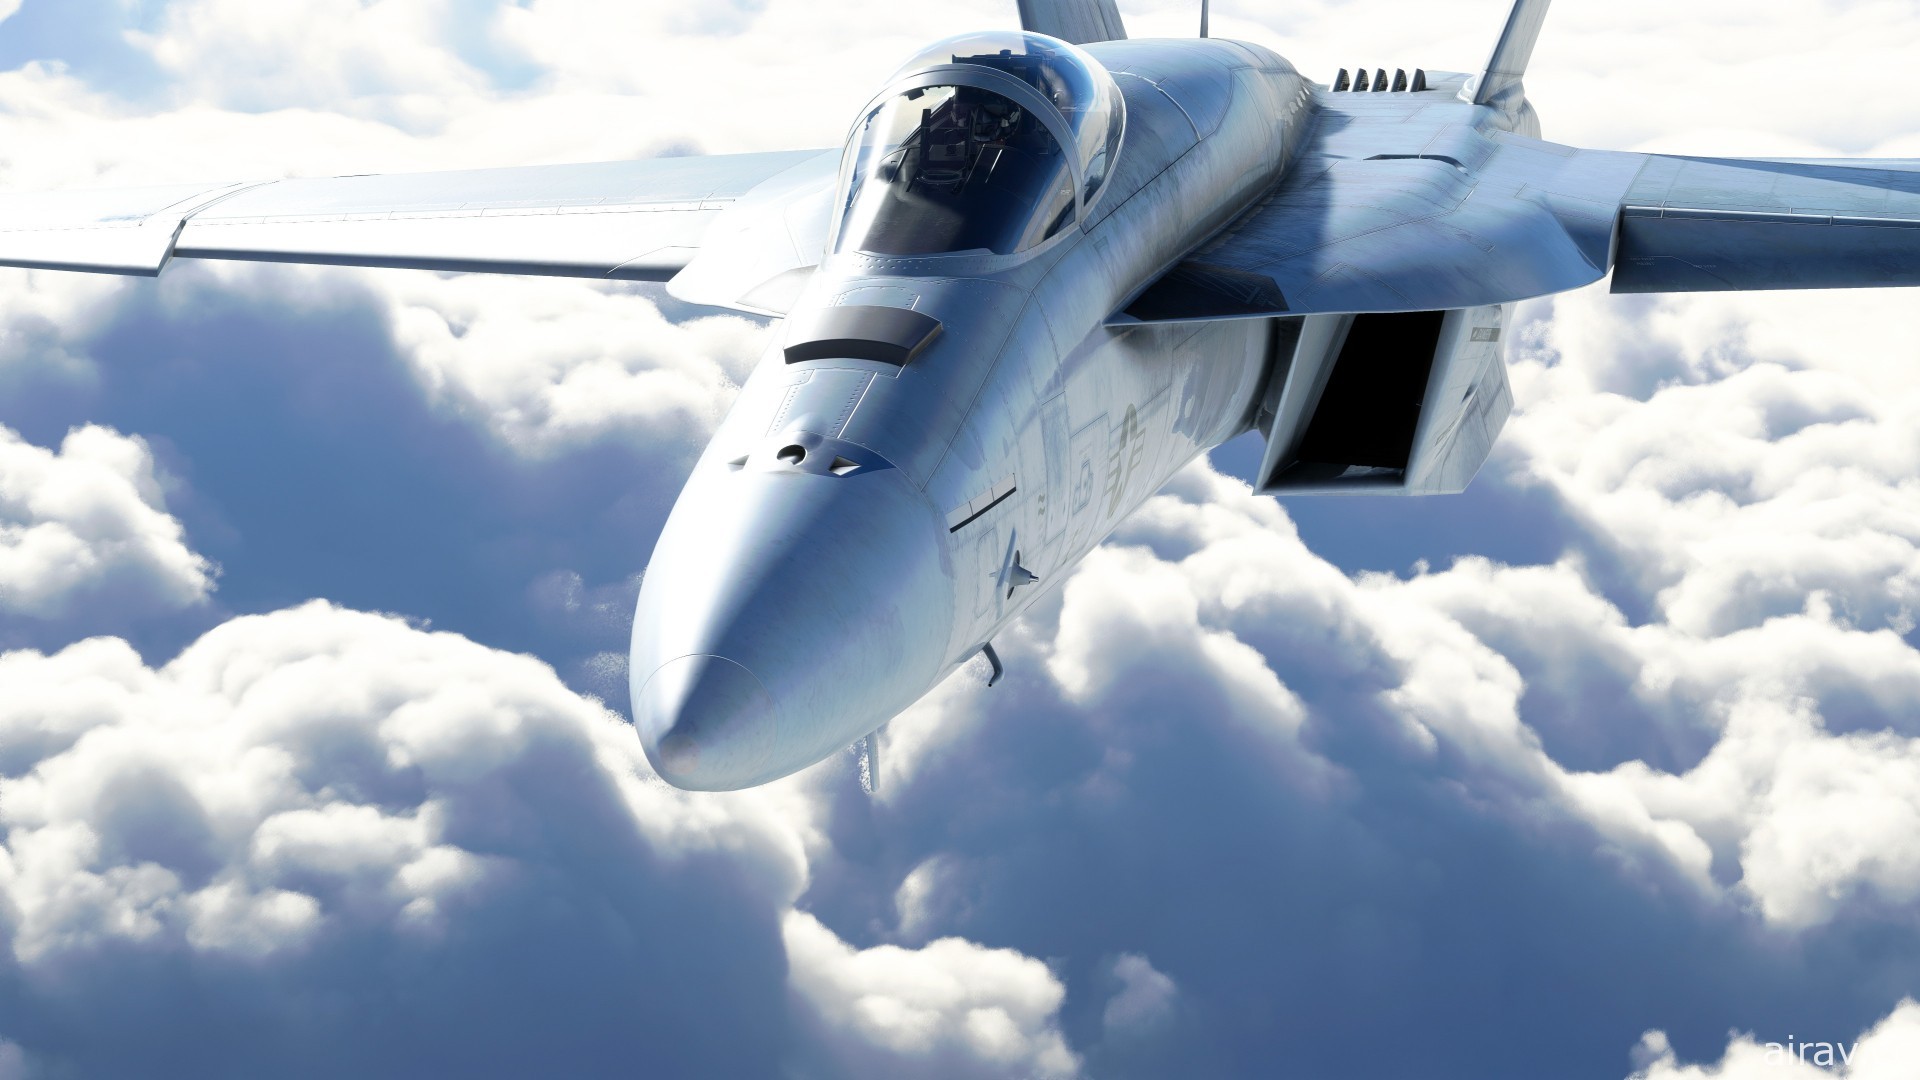 《微软模拟飞行》年度游戏版 11 月推出 收录首款战斗机 F/A-18 超级大黄蜂